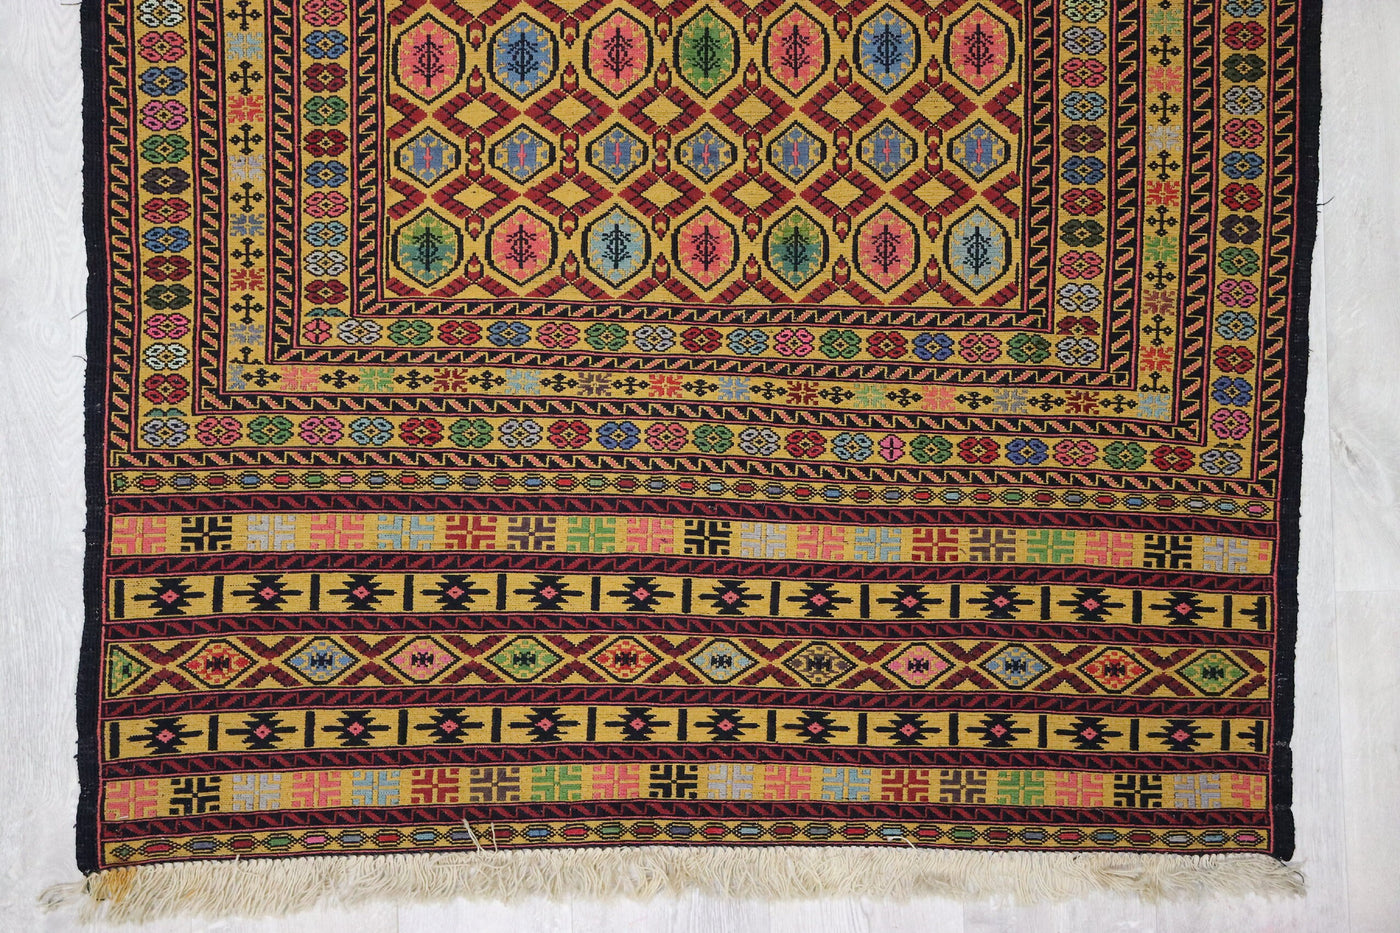 190x125 cm orient Teppich Afghan Turkmen Nomaden Pflanzenfarbe kelim kilim Naw2 Teppiche Orientsbazar   